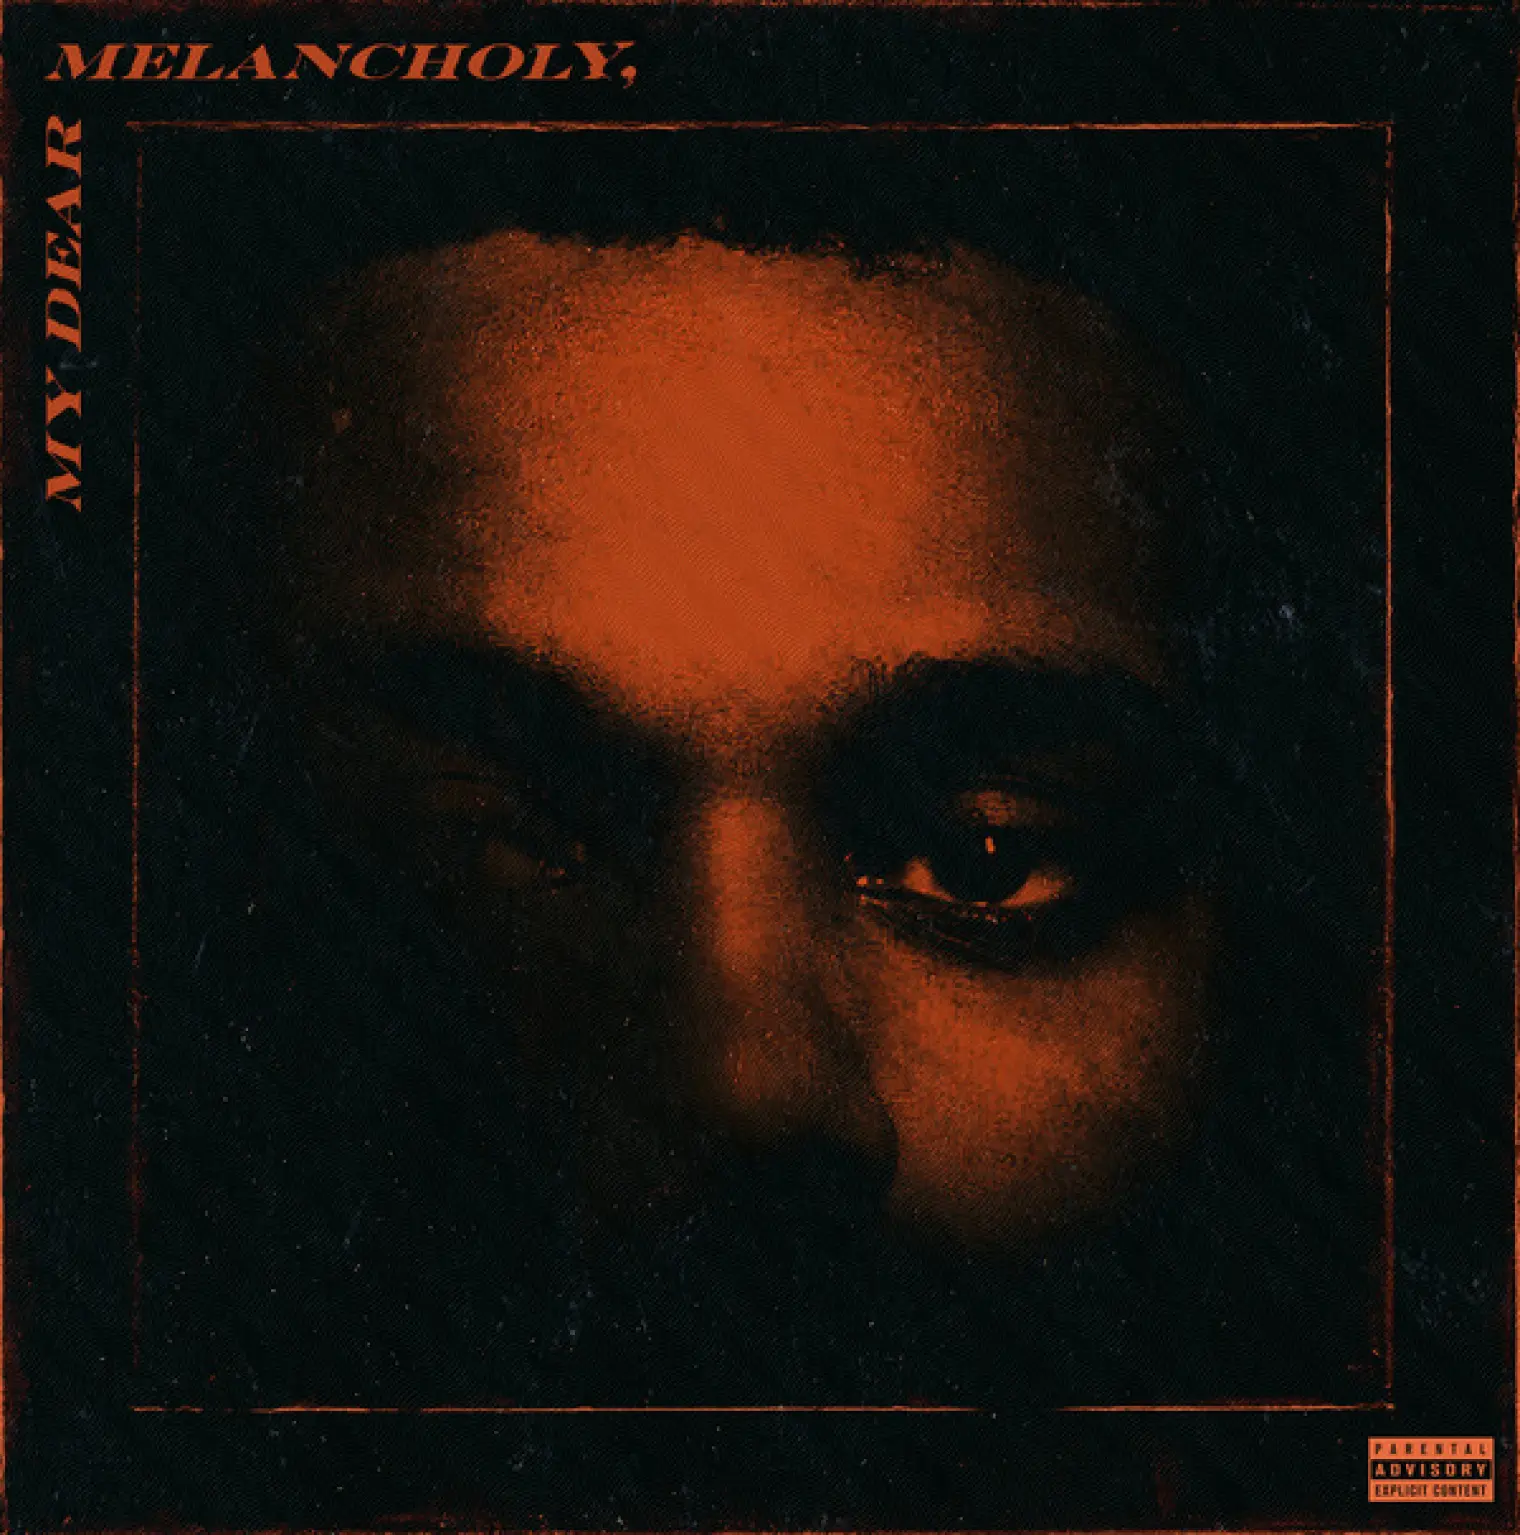 My Dear Melancholy, -  The Weeknd 